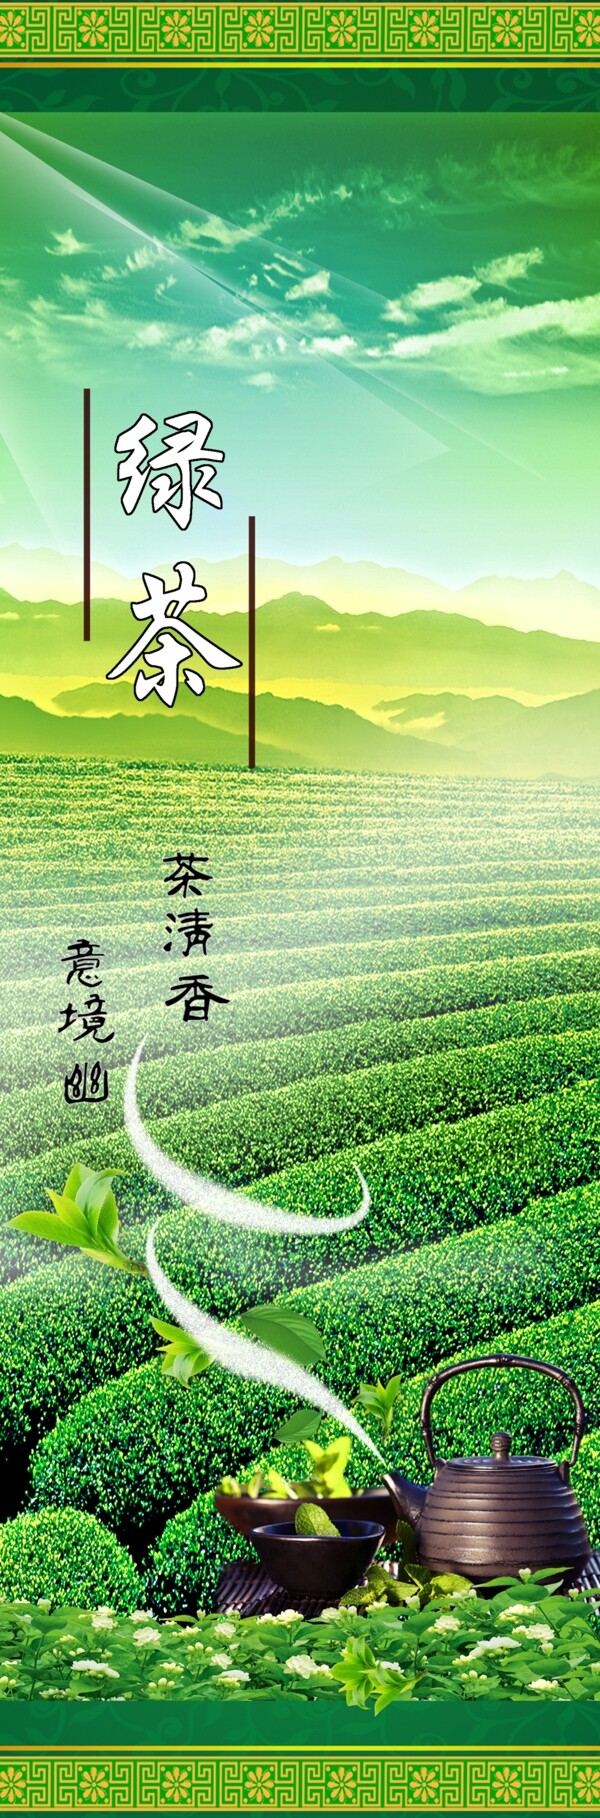 绿茶广告设计图片